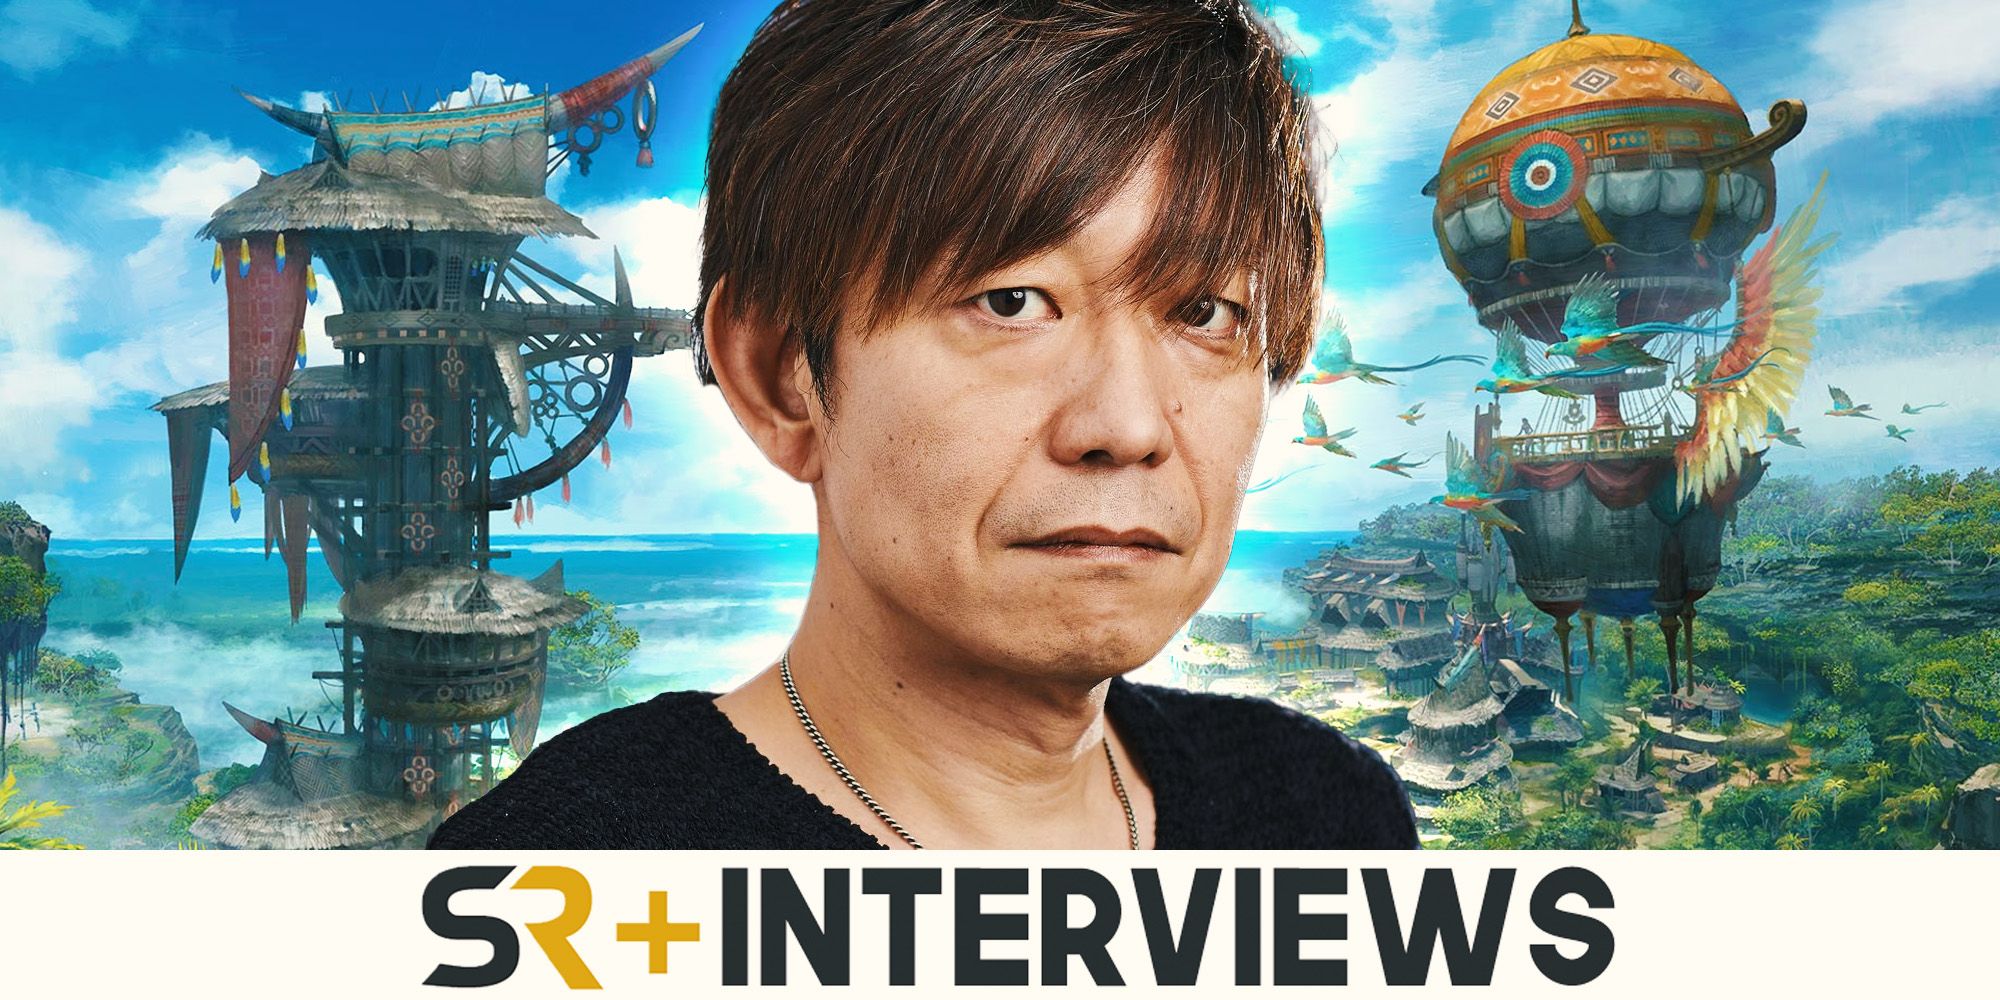 Décimo aniversario, diseño de trabajos, expansiones y éxitos de Final Fantasy XIV: una entrevista con Naoki Yoshida